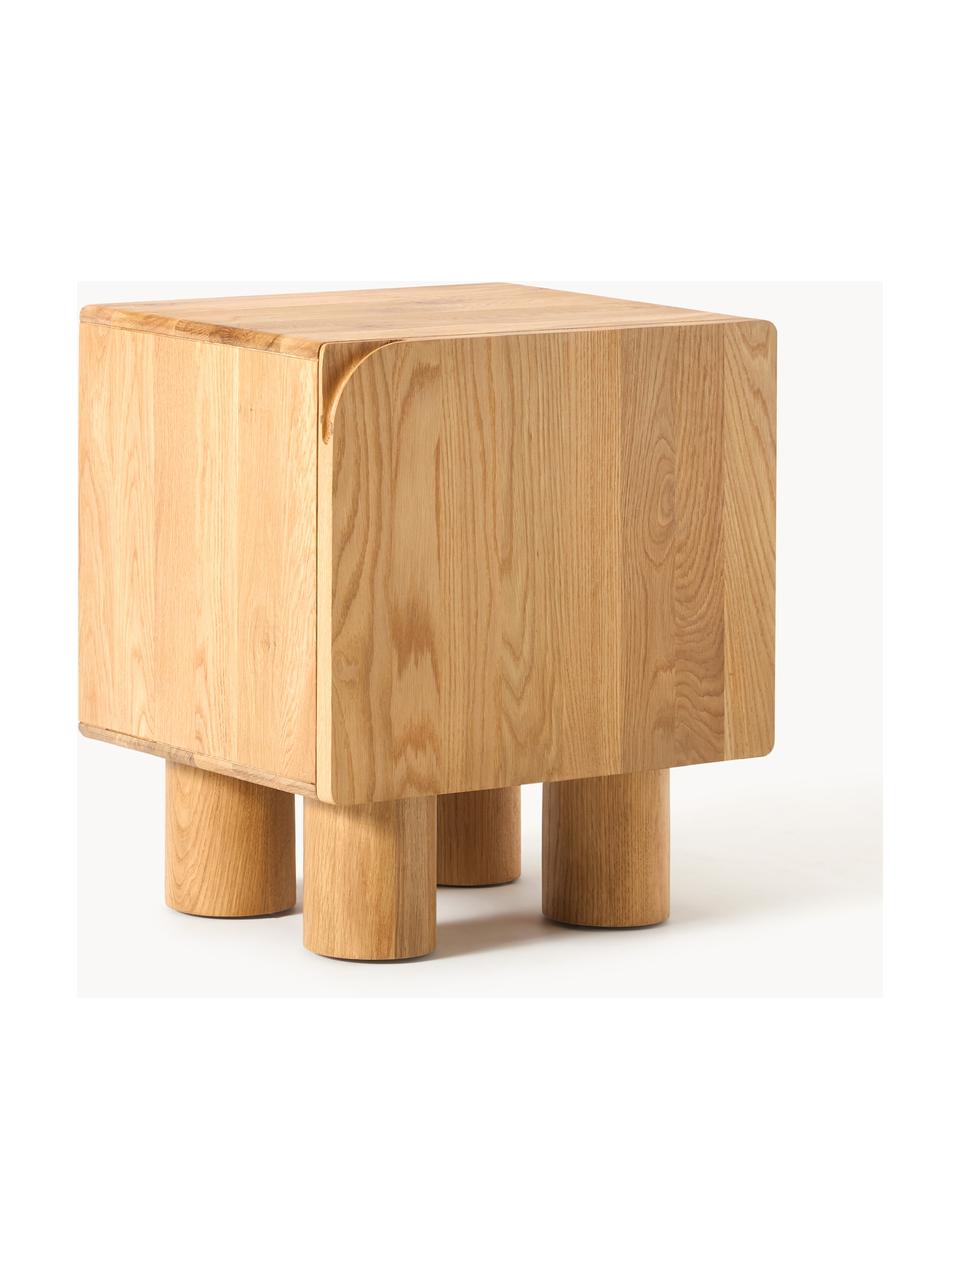 Noční stolek z dubového dřeva Cadi, Olejované dubové dřevo, Š 50 cm, V 55 cm